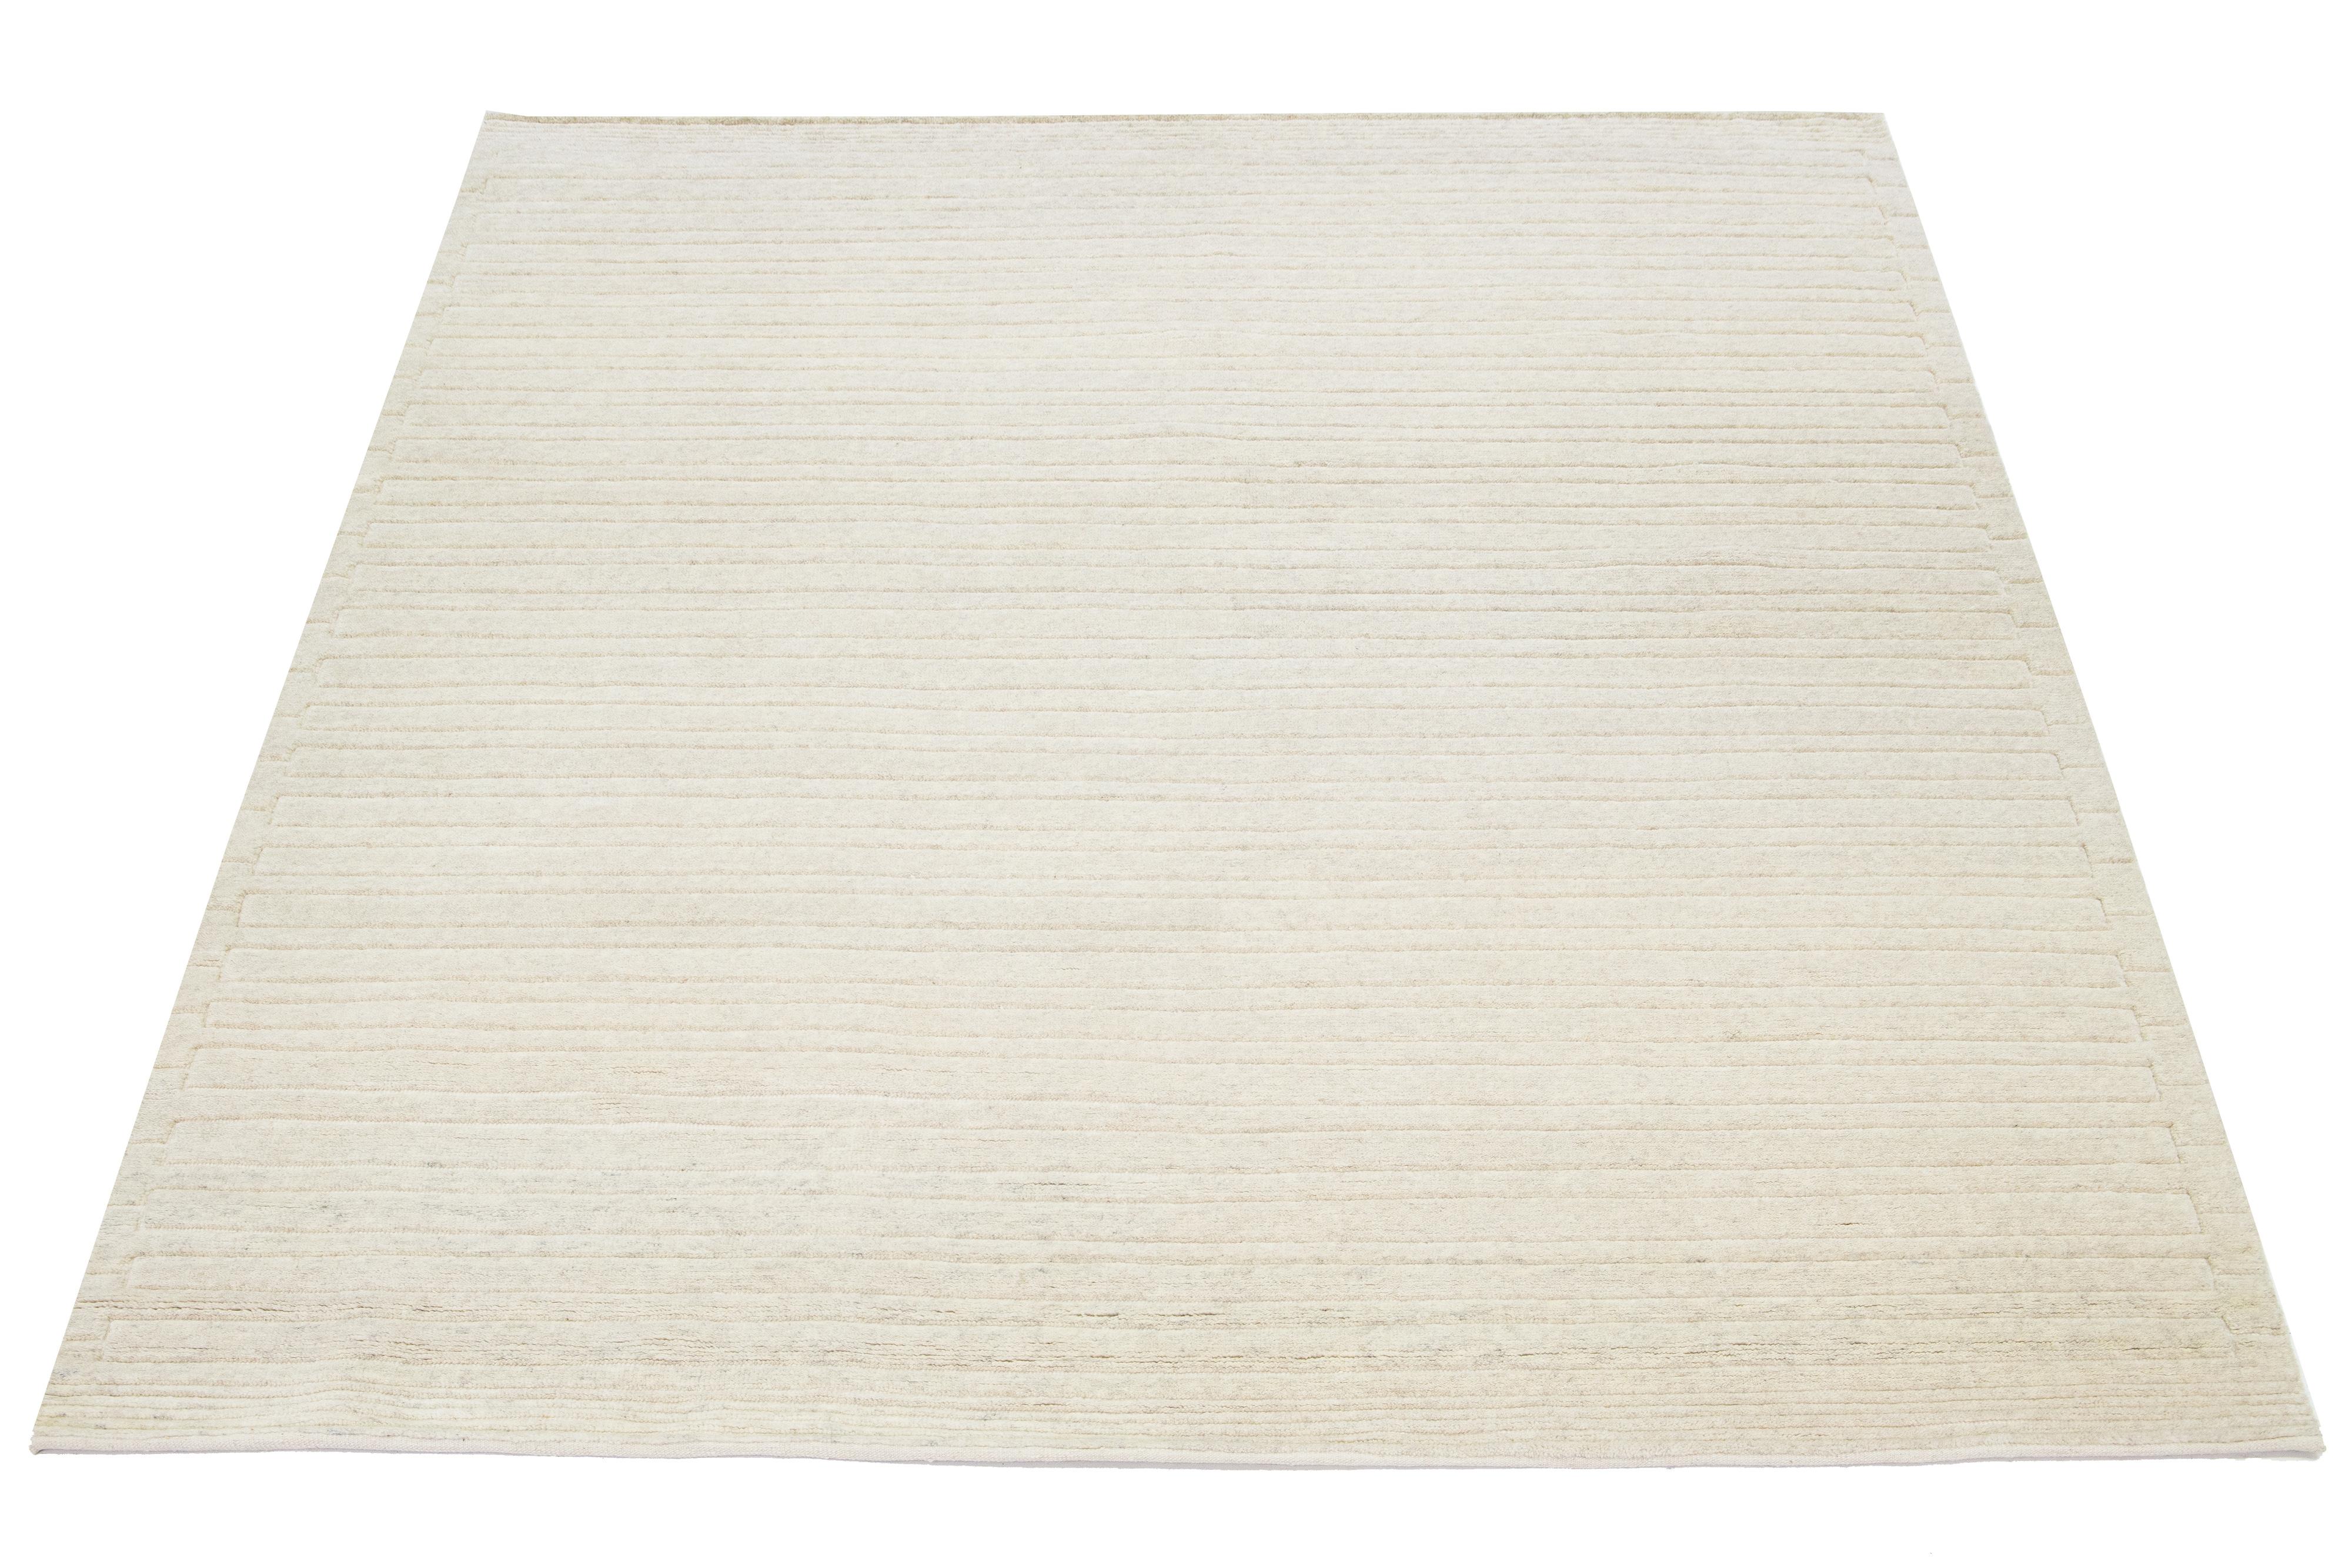 Dieser handgeknüpfte Teppich im marokkanischen Stil ist aus Wolle gefertigt und besticht durch seine minimalistische Ästhetik. Es zeigt moderne Streifen auf einem natürlich getönten elfenbeinfarbenen Hintergrund.

Dieser Teppich misst 8'3